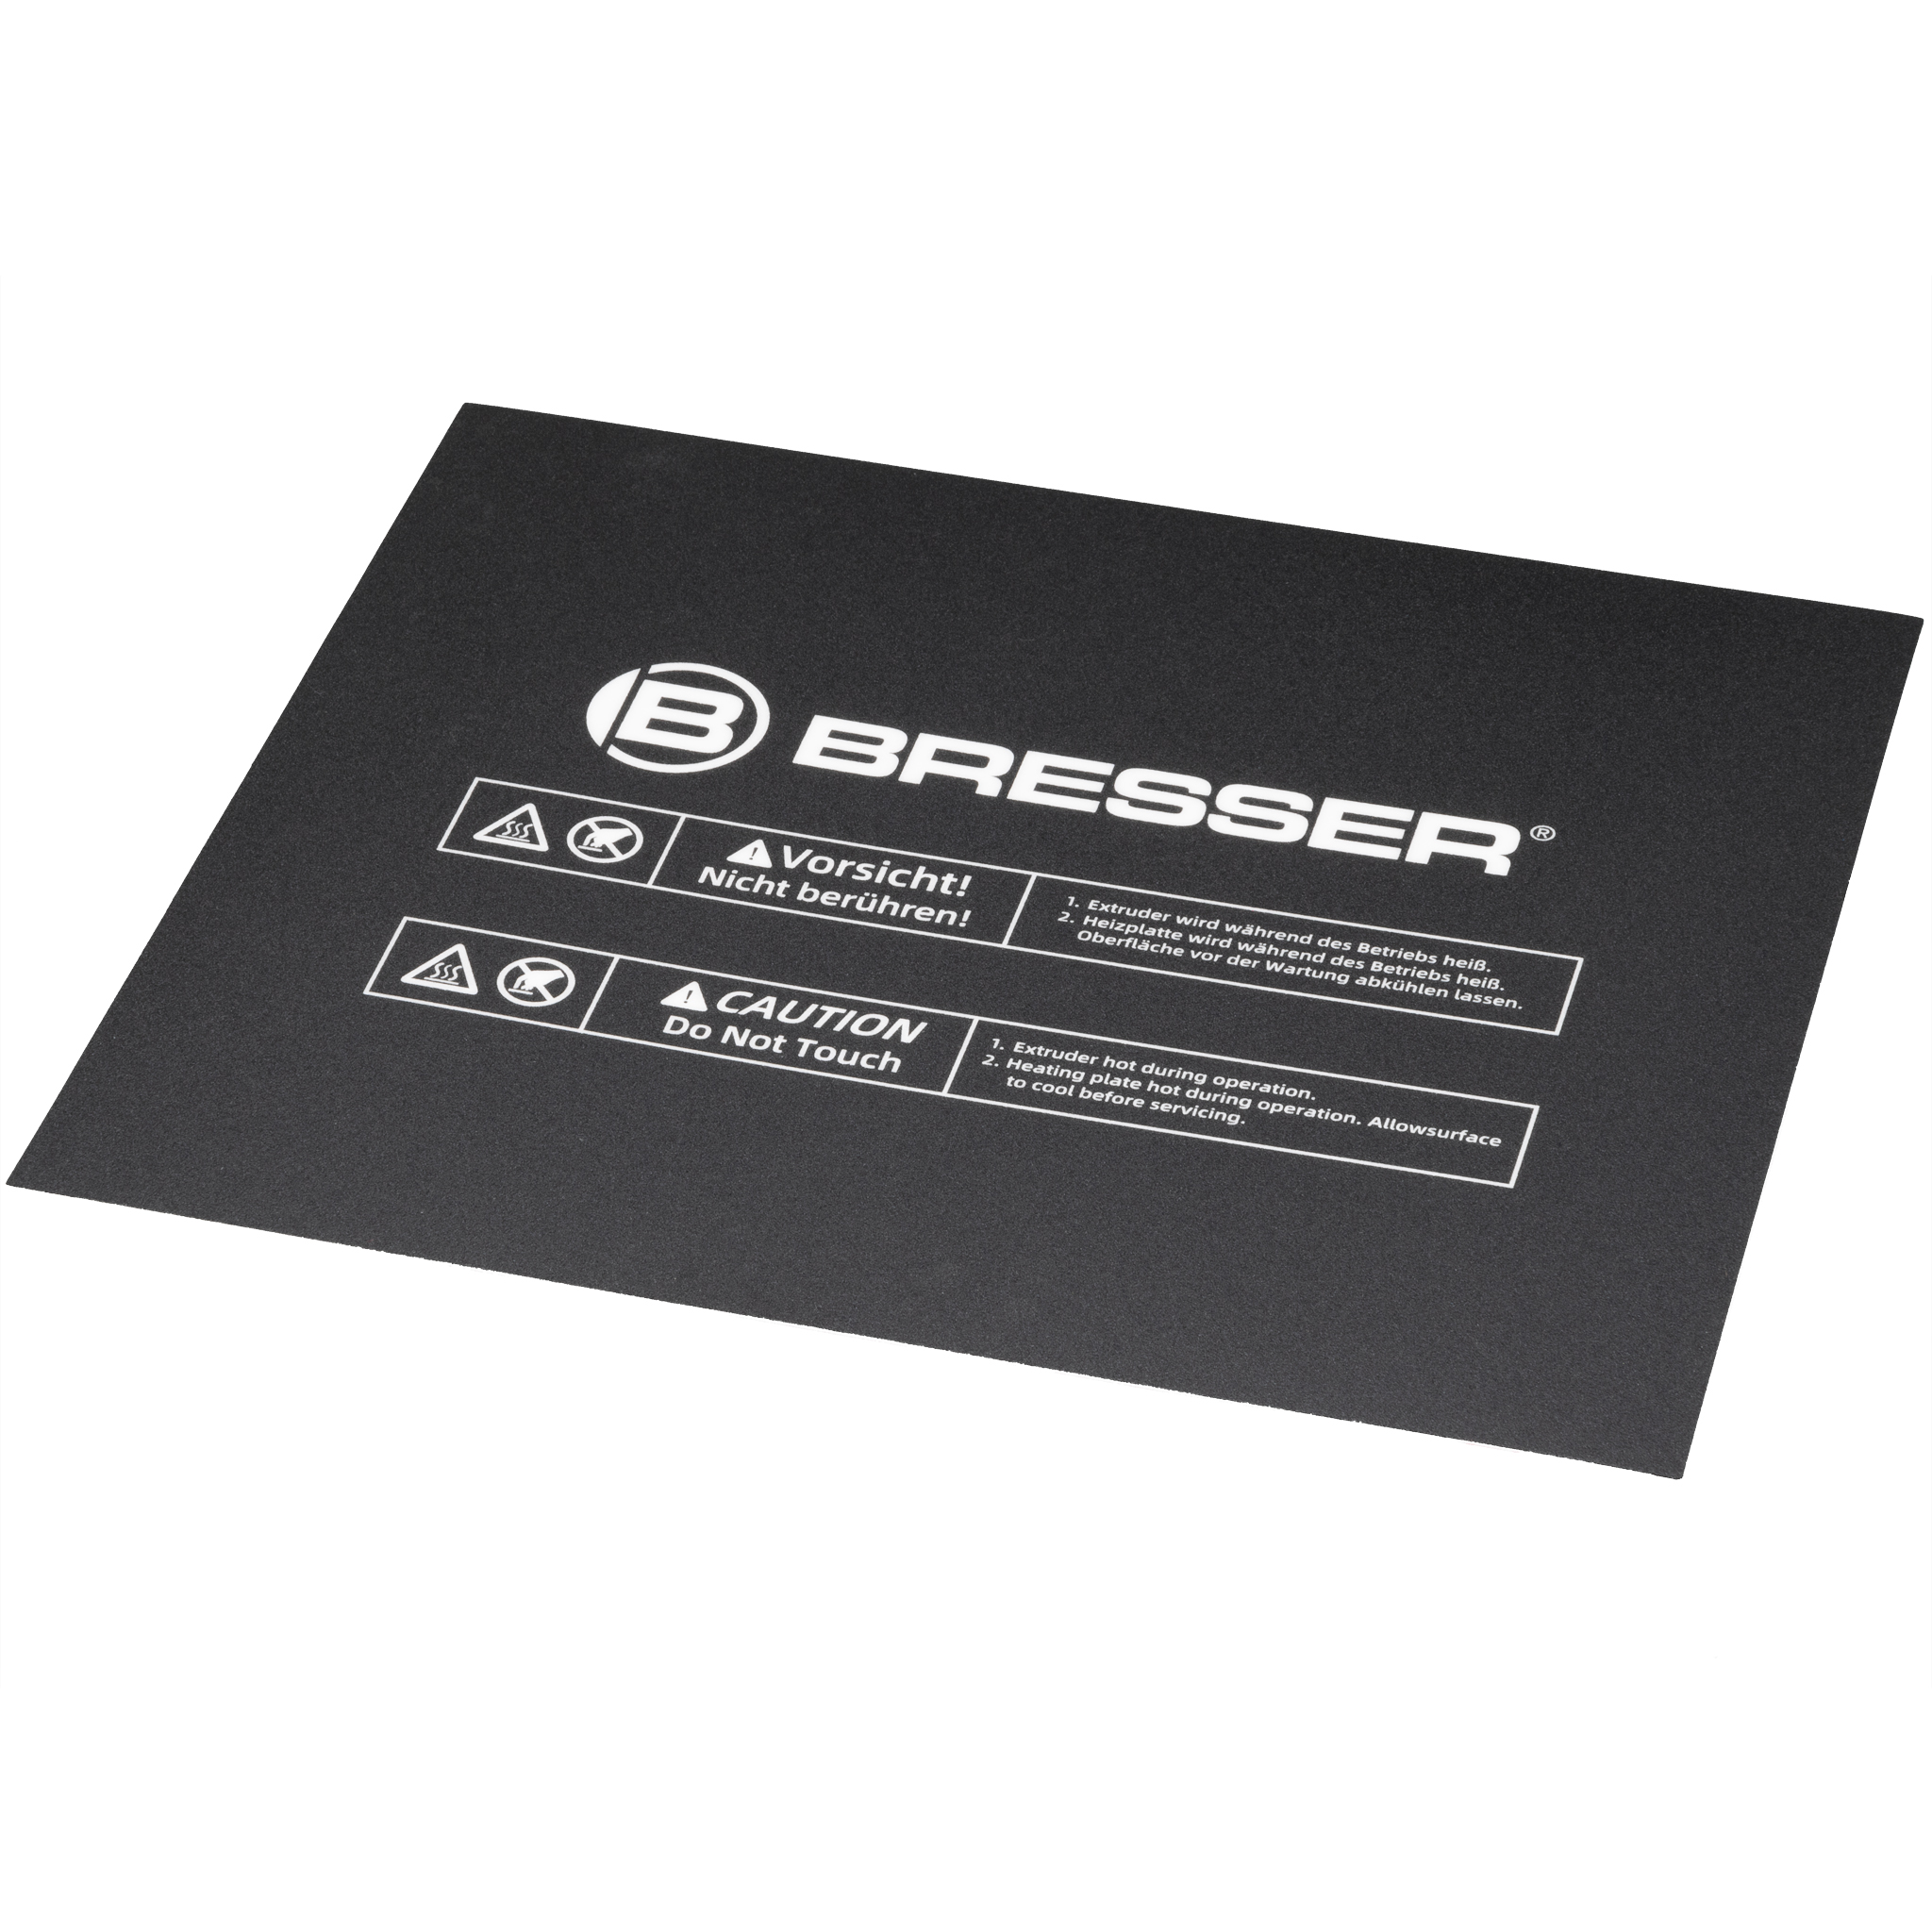 BRESSER Ersatz-Bauplattform für 3D Drucker REX II (Art. #2010200)